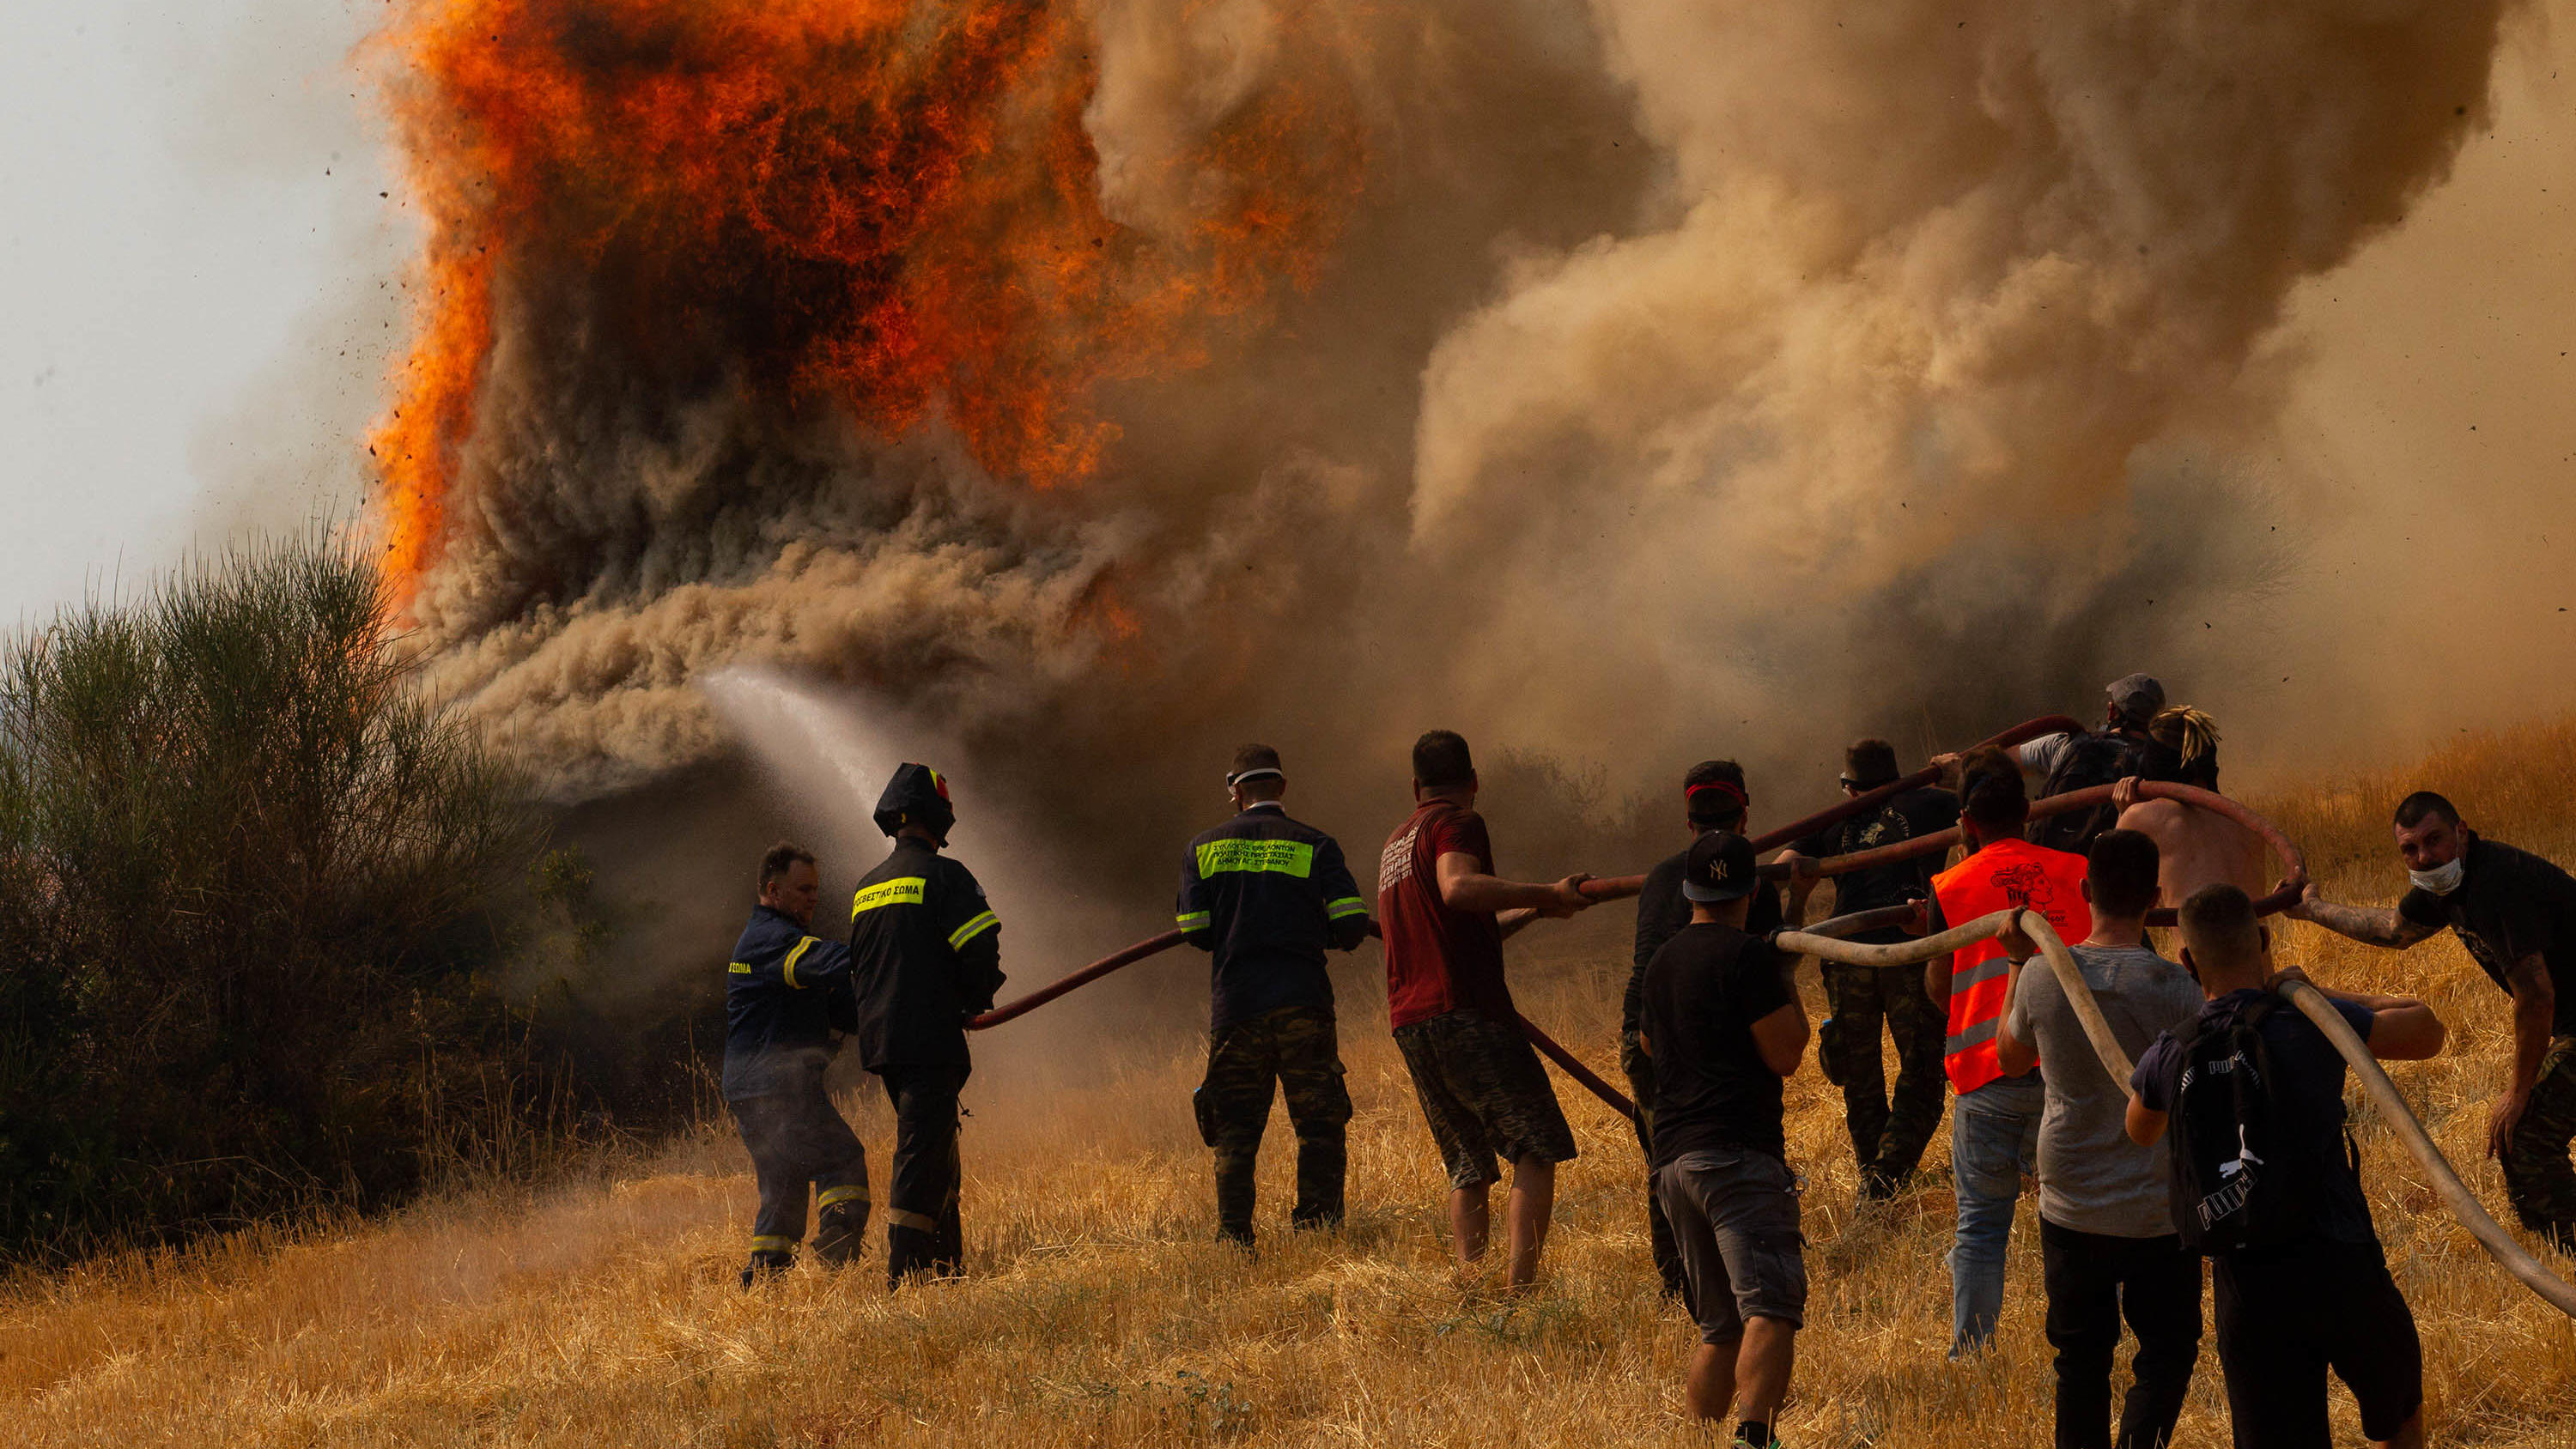 dpatopbilder - 06.08.2021, Griechenland, Afidnes: Feuerwehrleute und Freiwillige versuchen ein Feuer in Afidnes, etwa 30 Kilometer von der griechischen Hauptstadt Athen entfernt, zu löschen. Die Brände in Griechenland sind weiterhin außer Kontrolle. 